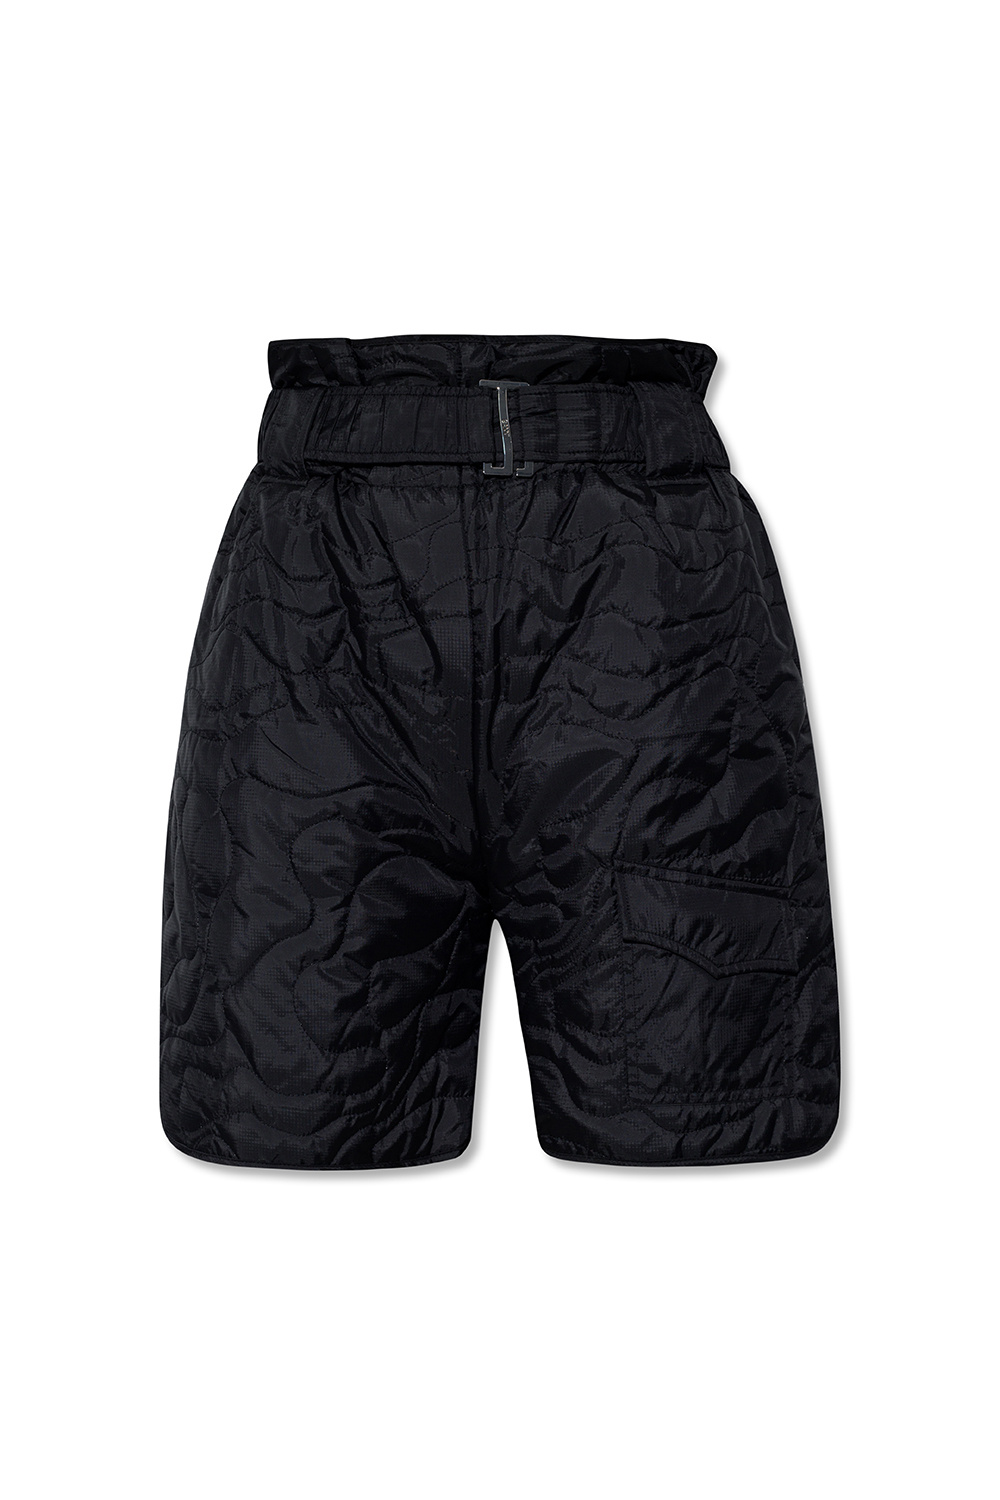 Louis Vuitton Printed Nylon Swim Shorts - Vitkac shop online